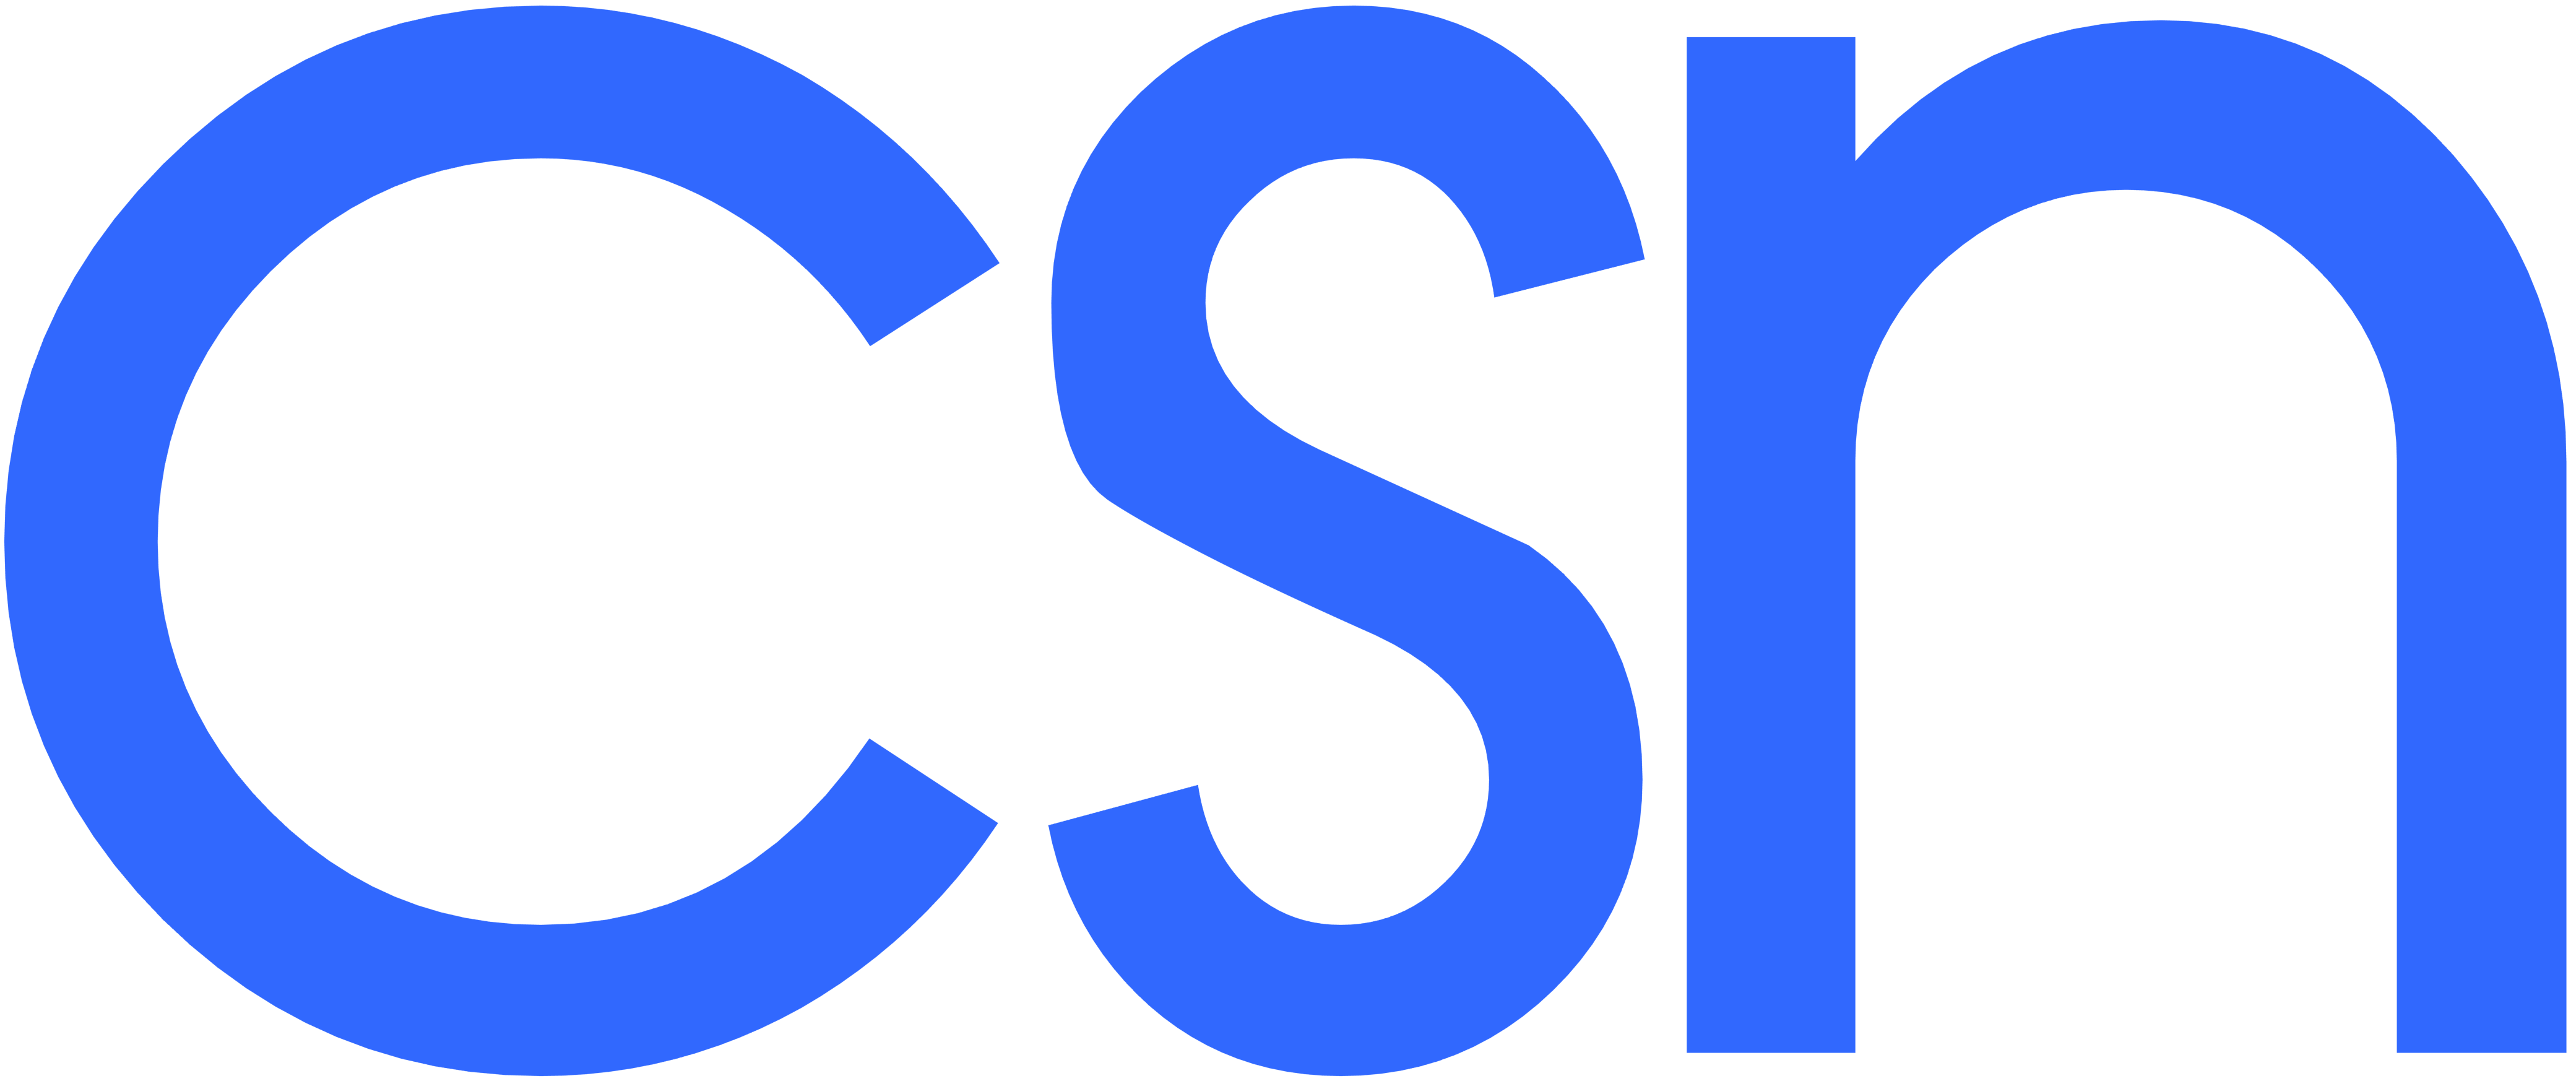 CSC Logo :CSC Digital Seva Logo High Quality Vector Download - cscgrow.com